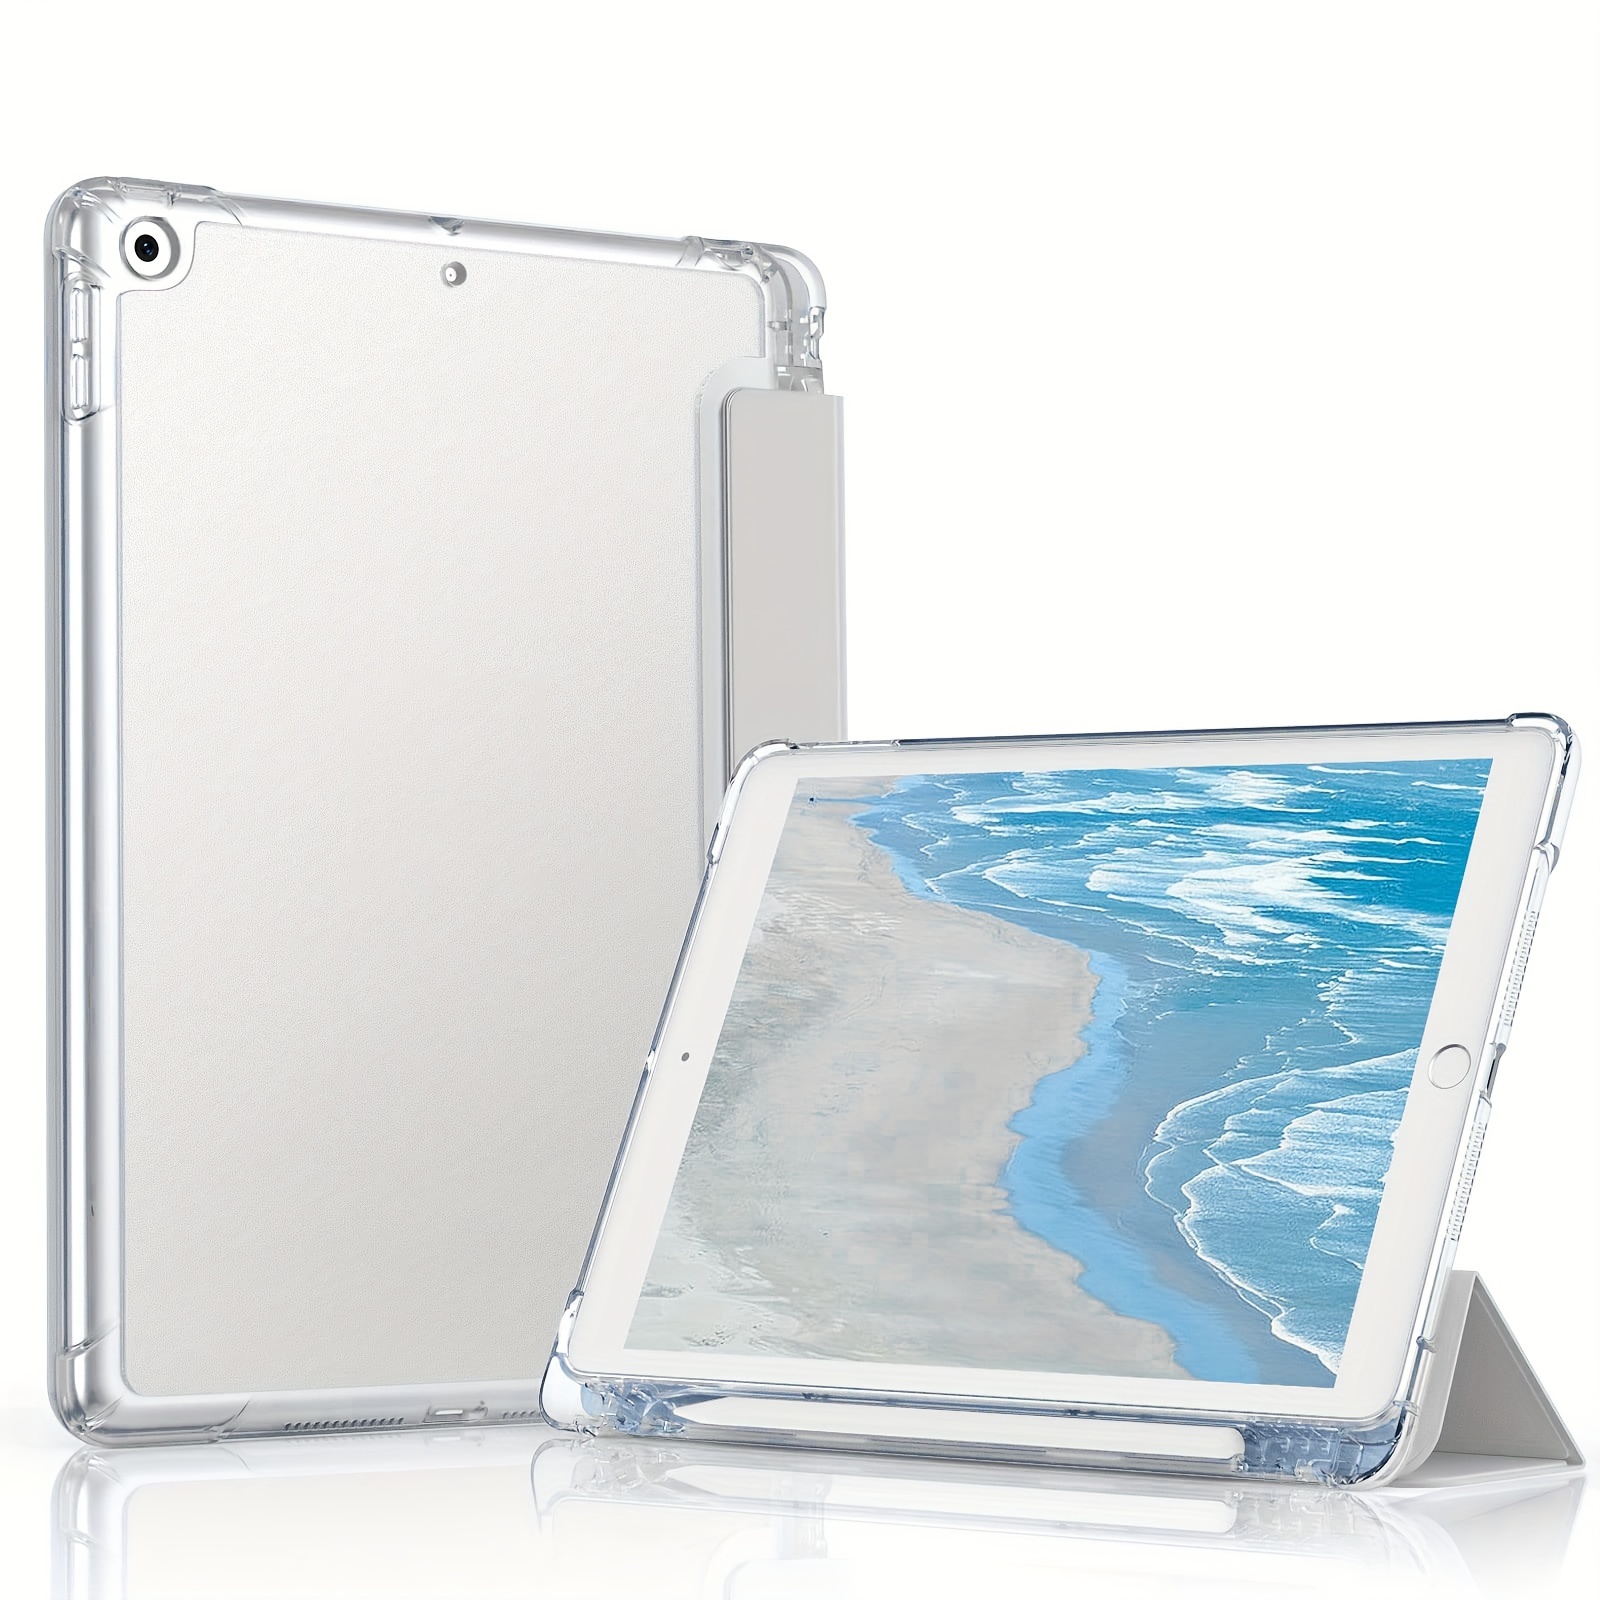 Coque pour iPad 10.2 iPad 7ème génération, coque arrière rigide avec  support fin pour iPad 7ème génération (A2197 A2198 A2200)